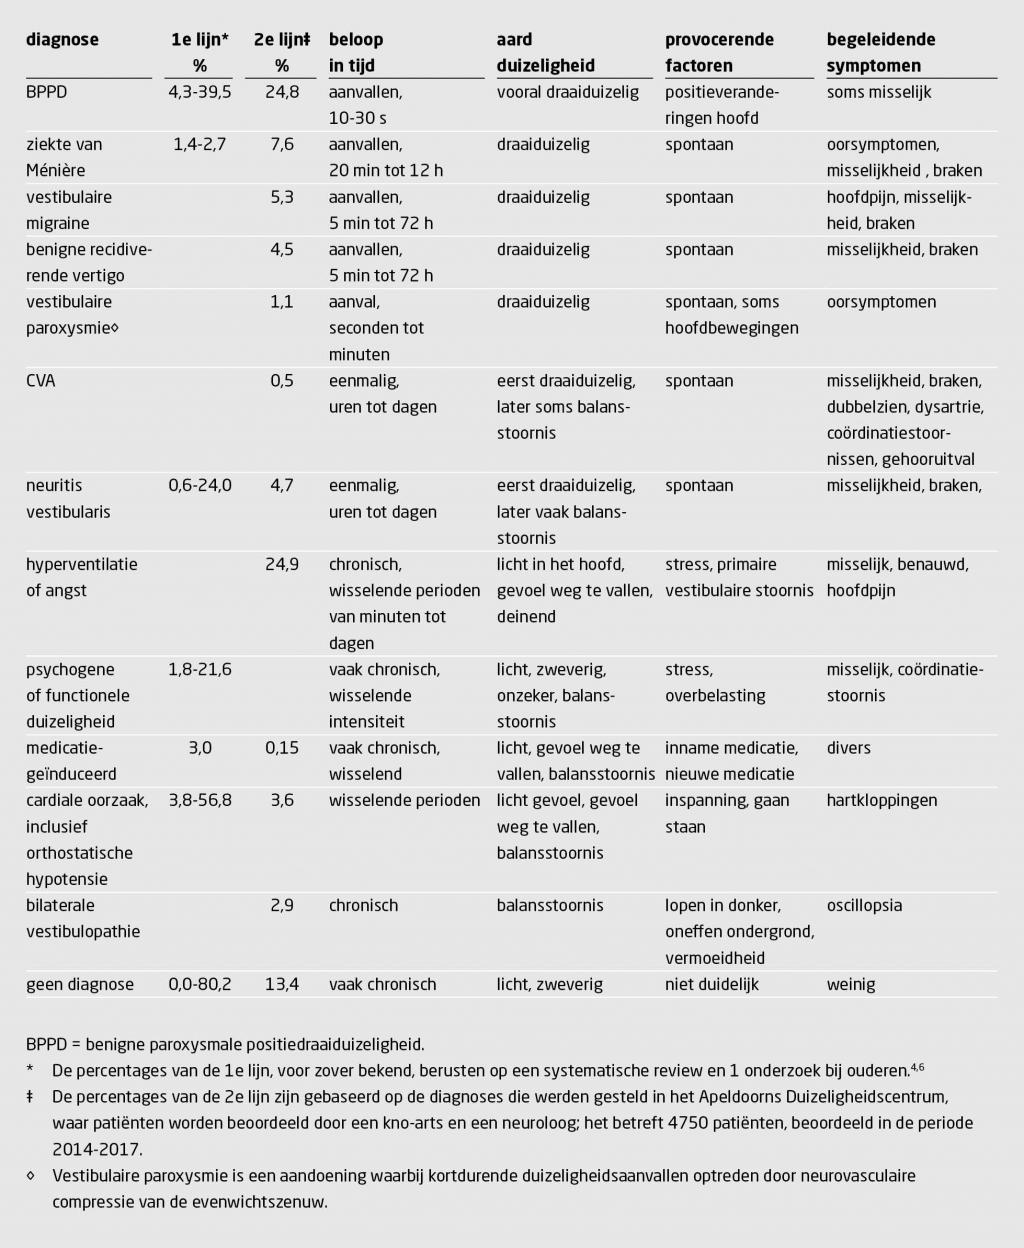 Tabel 1 | Meest gestelde diagnoses bij duizeligheid in de eerste en tweede lijn